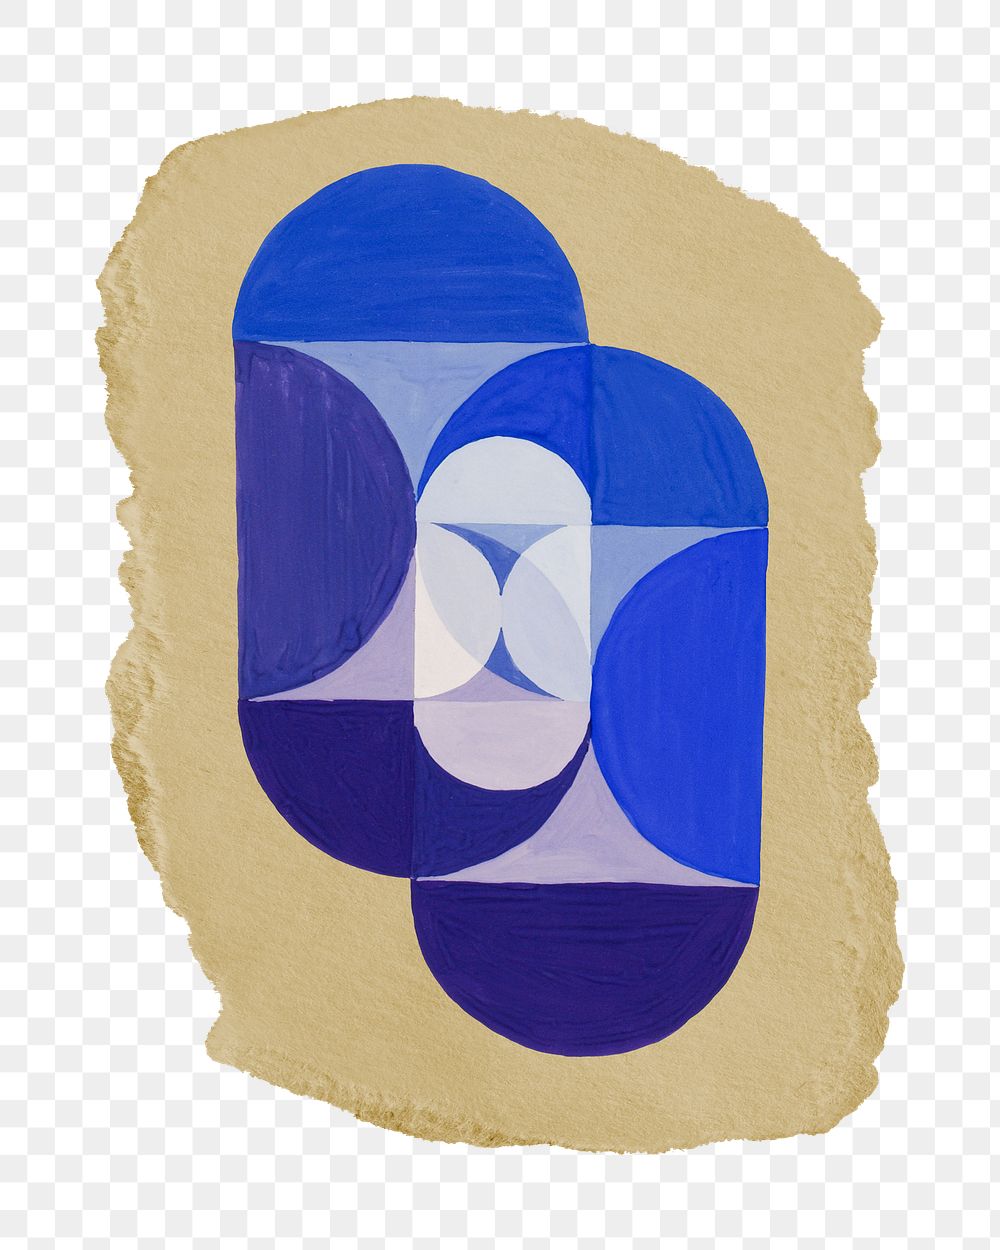 Png Key Blue sticker, vintage illustration on ripped paper, transparent background